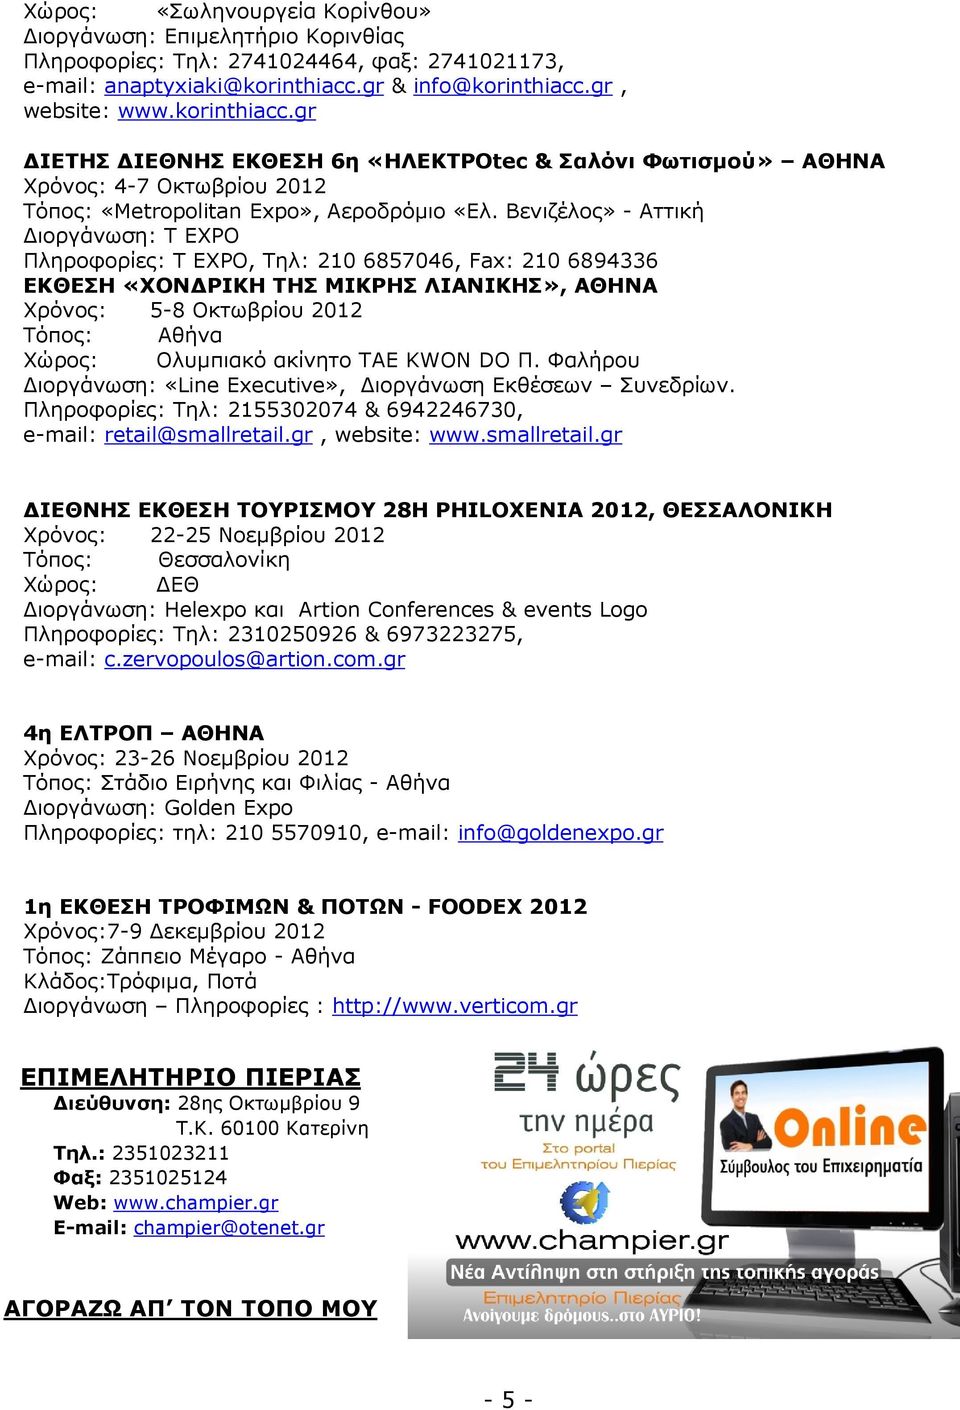 Βενιζέλος» - Αττική ιοργάνωση: T EXPO Πληροφορίες: T EXPO, Τηλ: 210 6857046, Fax: 210 6894336 ΕΚΘΕΣΗ «ΧΟΝ ΡΙΚΗ ΤΗΣ ΜΙΚΡΗΣ ΛΙΑΝΙΚΗΣ», ΑΘΗΝΑ Χρόνος: 5-8 Οκτωβρίου 2012 Τόπος: Αθήνα Χώρος: Ολυµπιακό